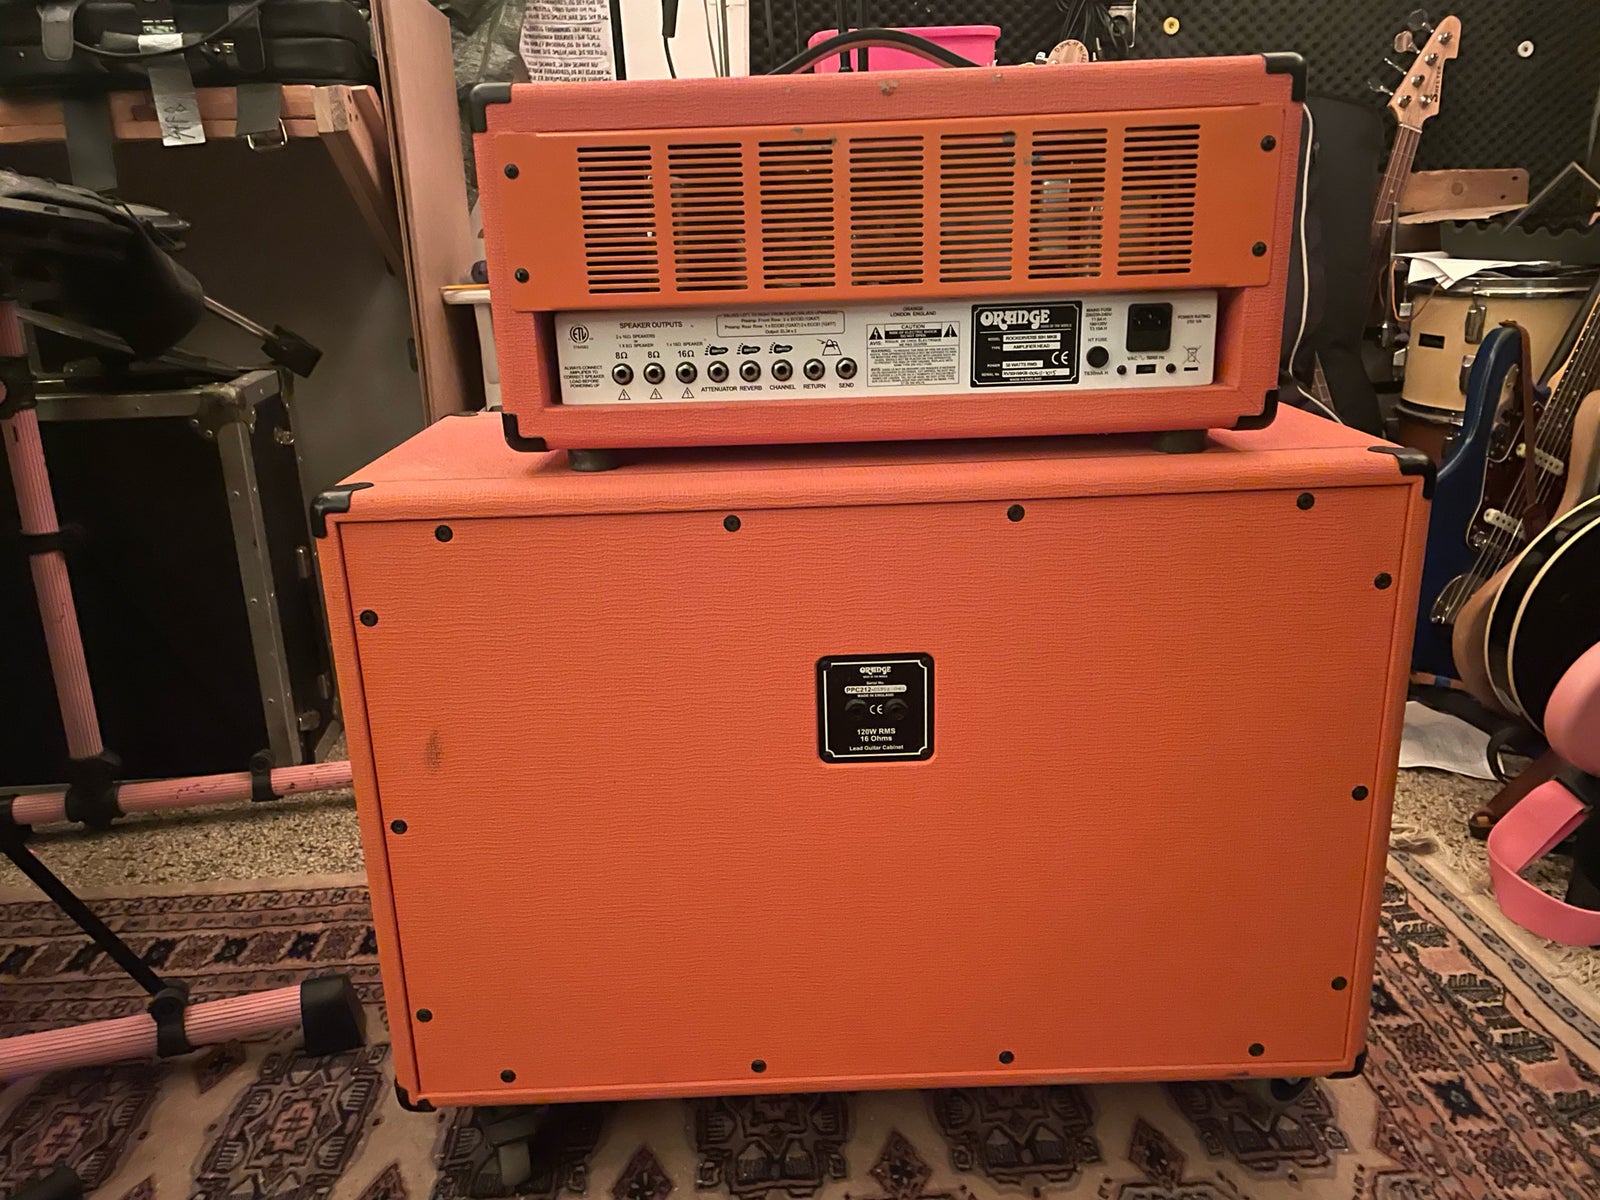 Guitaranlæg, Orange Rockerverb mklll, 50 W